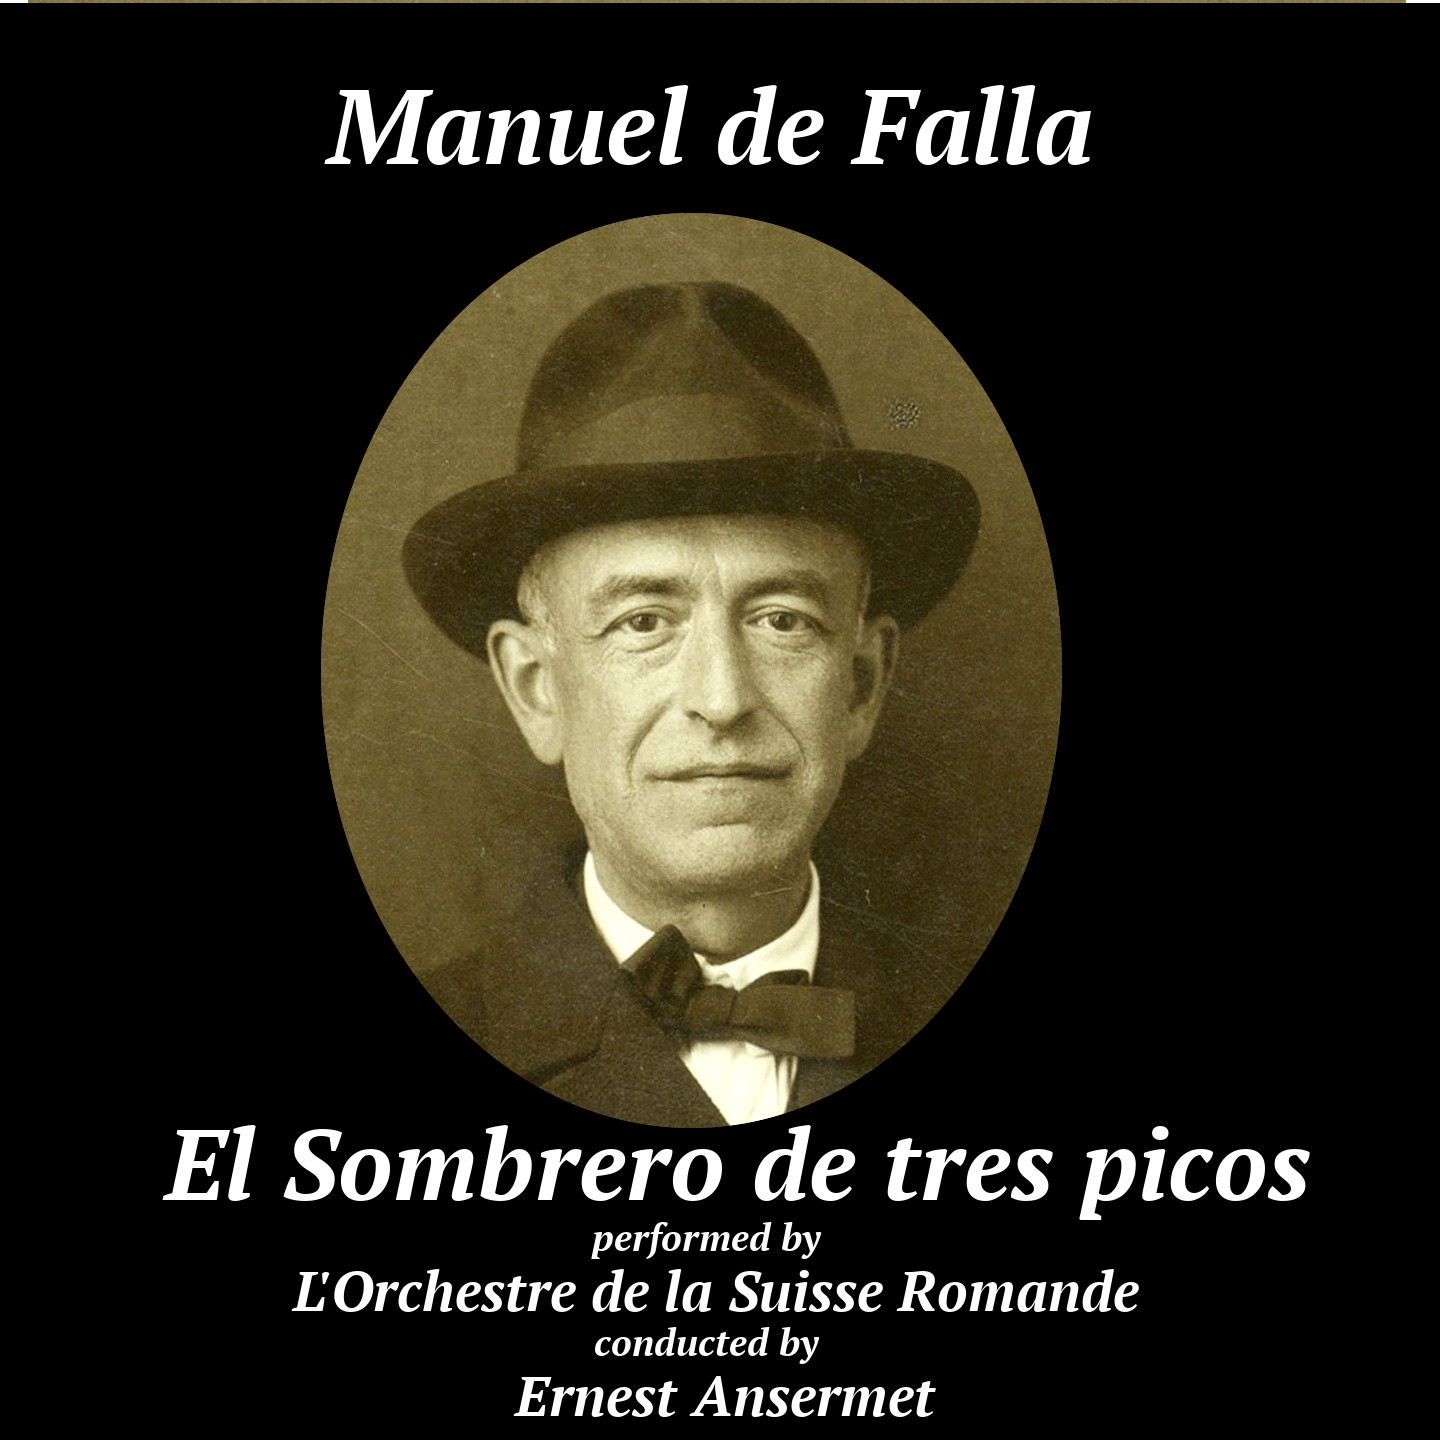 Manuel De Falla: El sombrero de tres picos